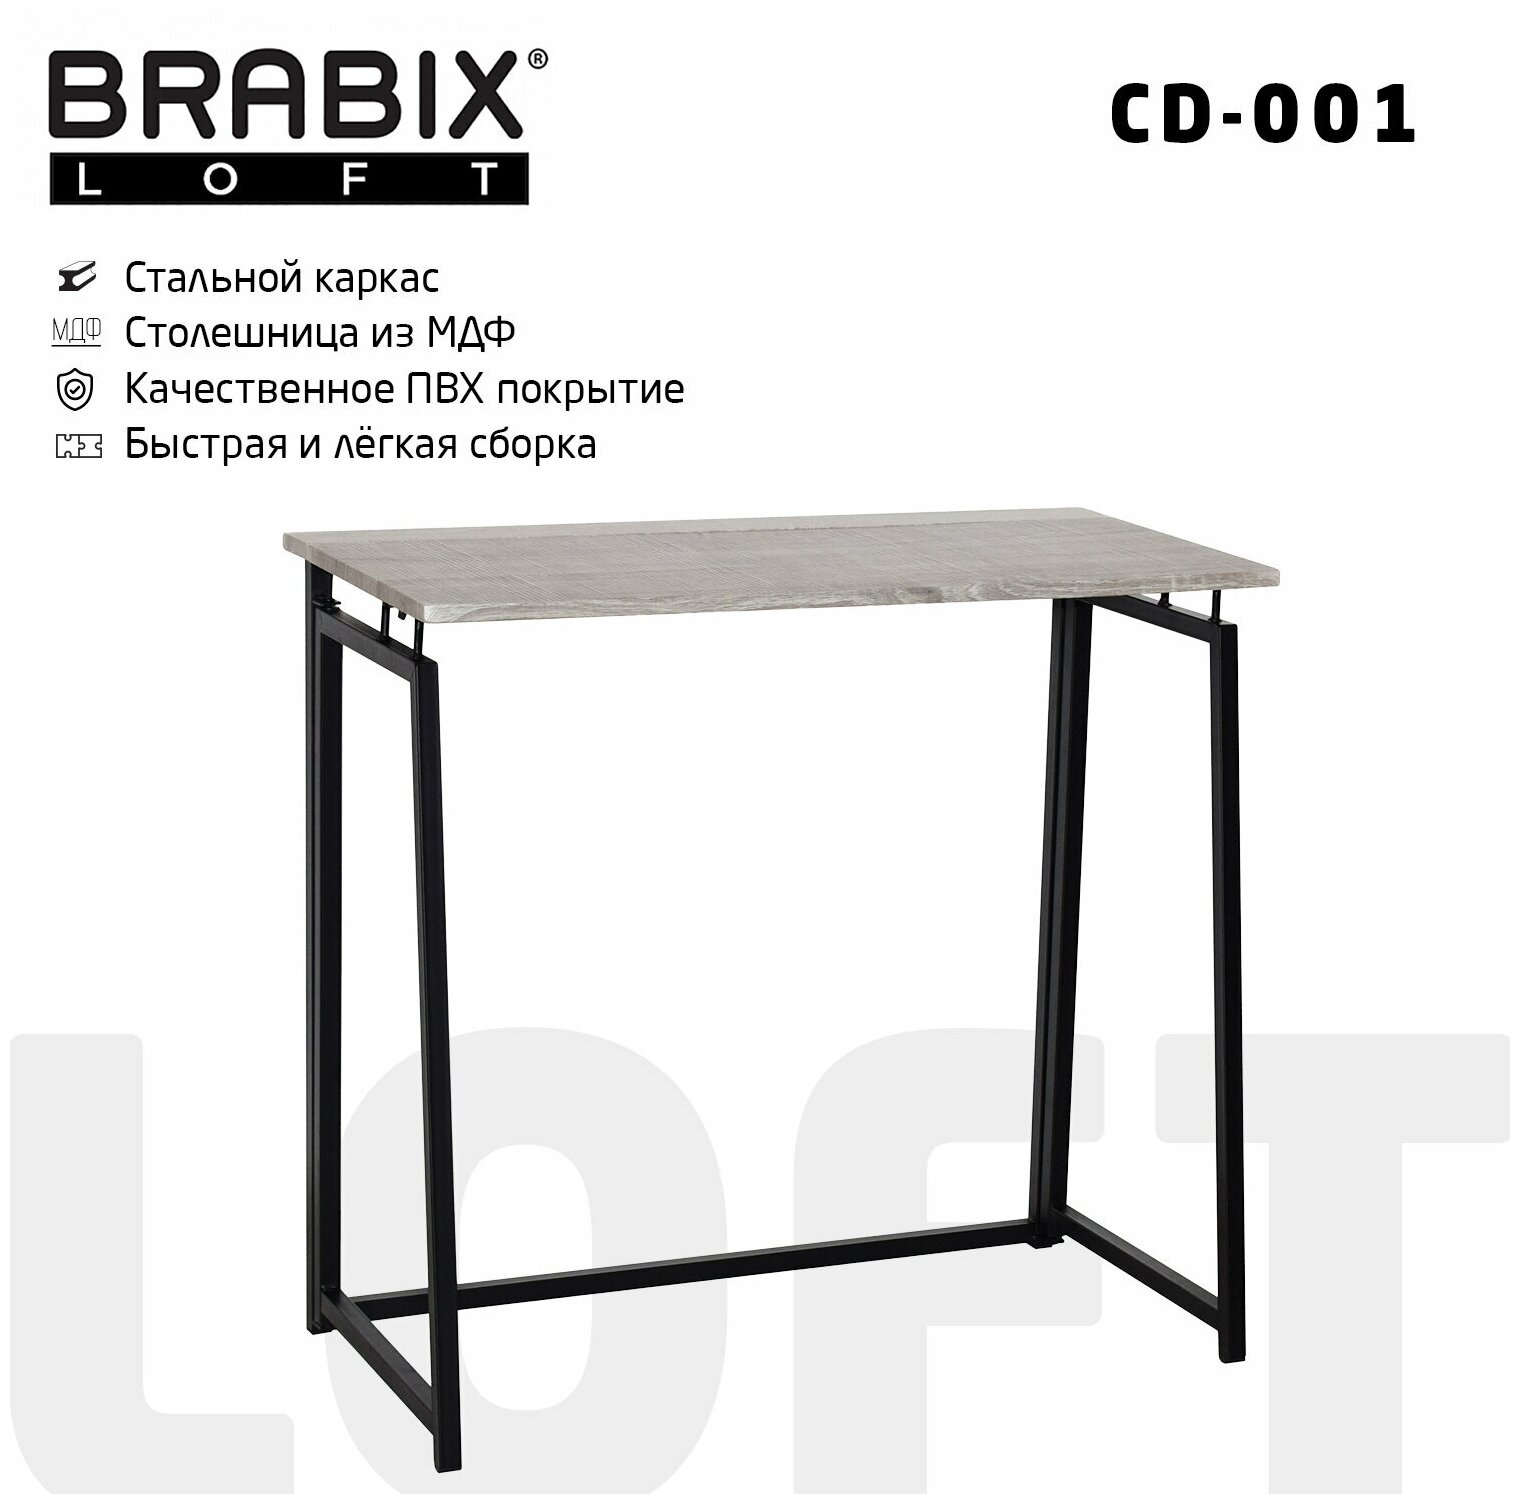 Стол на металлокаркасе BRABIX "LOFT CD-001", 800х440х740 мм, складной, цвет дуб антик, 641210 - 1 шт.